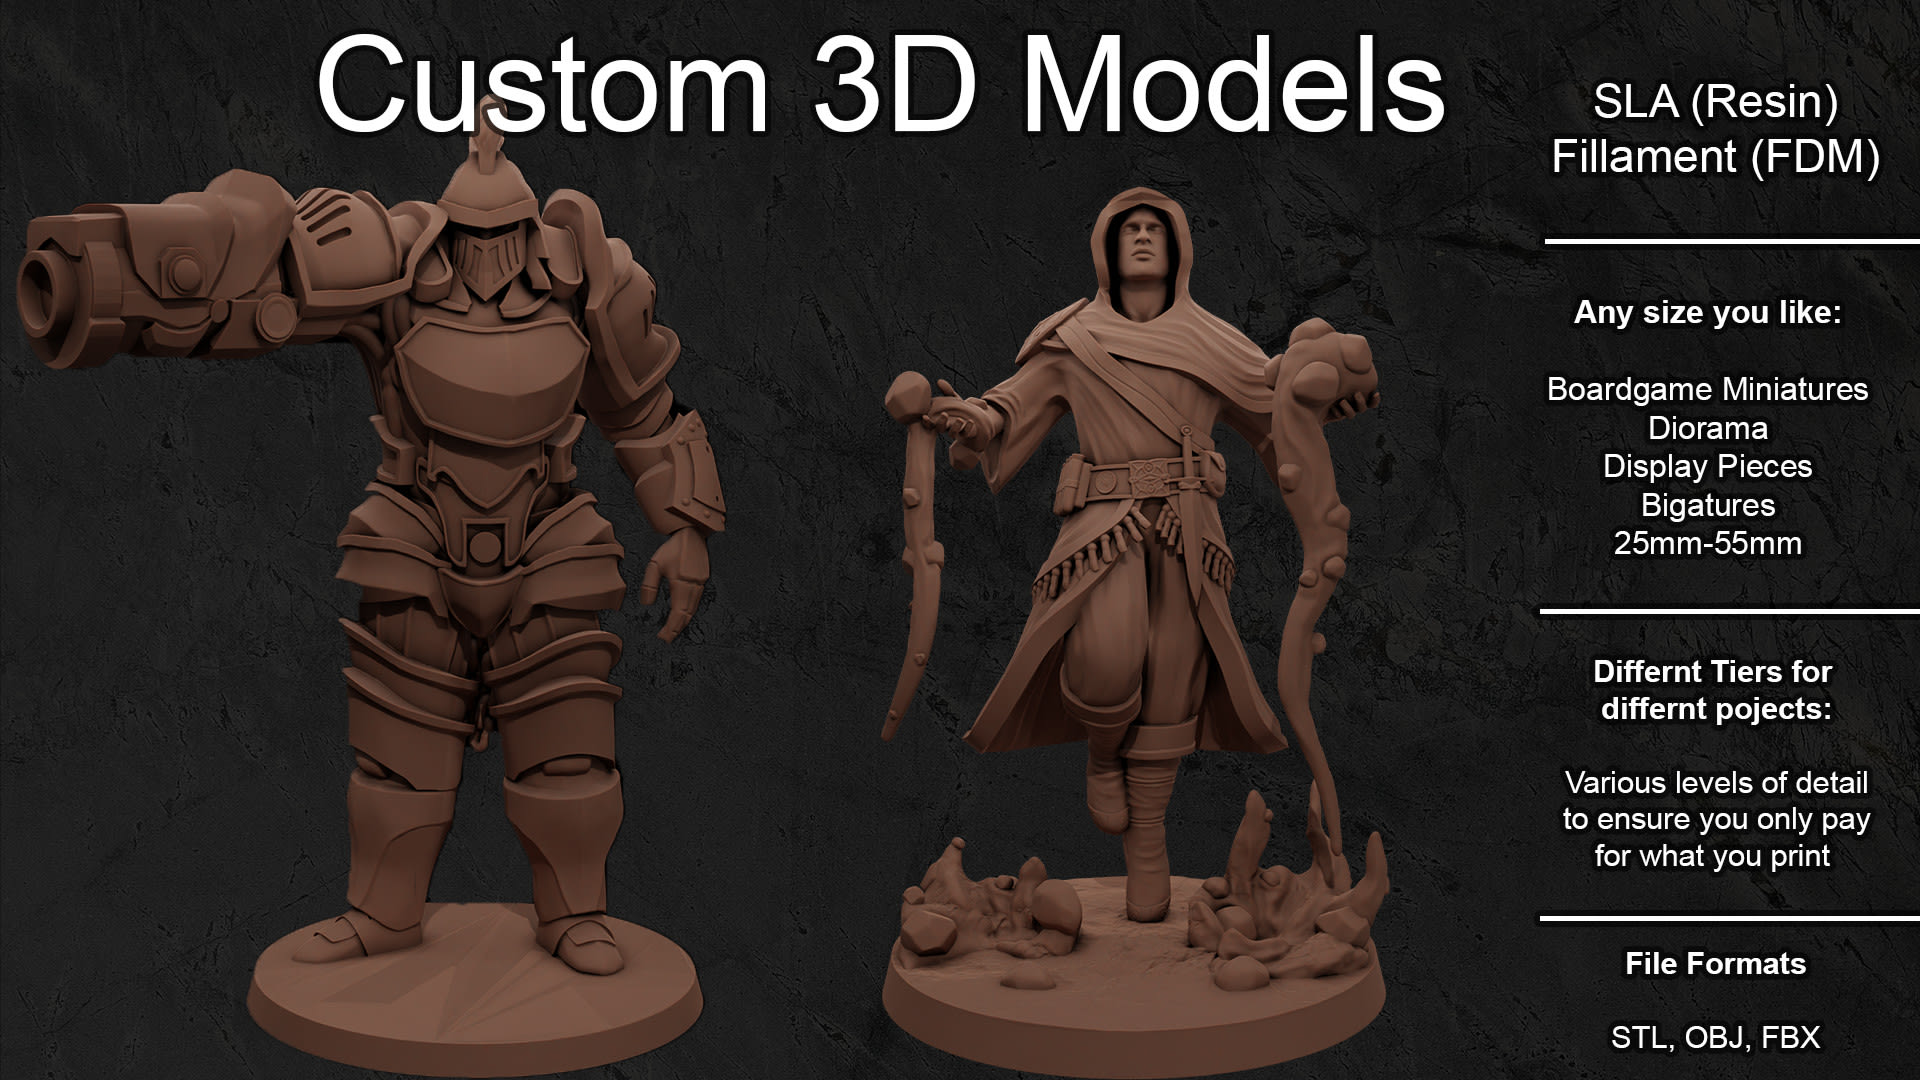 Scultura, miniature 3d e modelli personalizzati per la stampa 3d